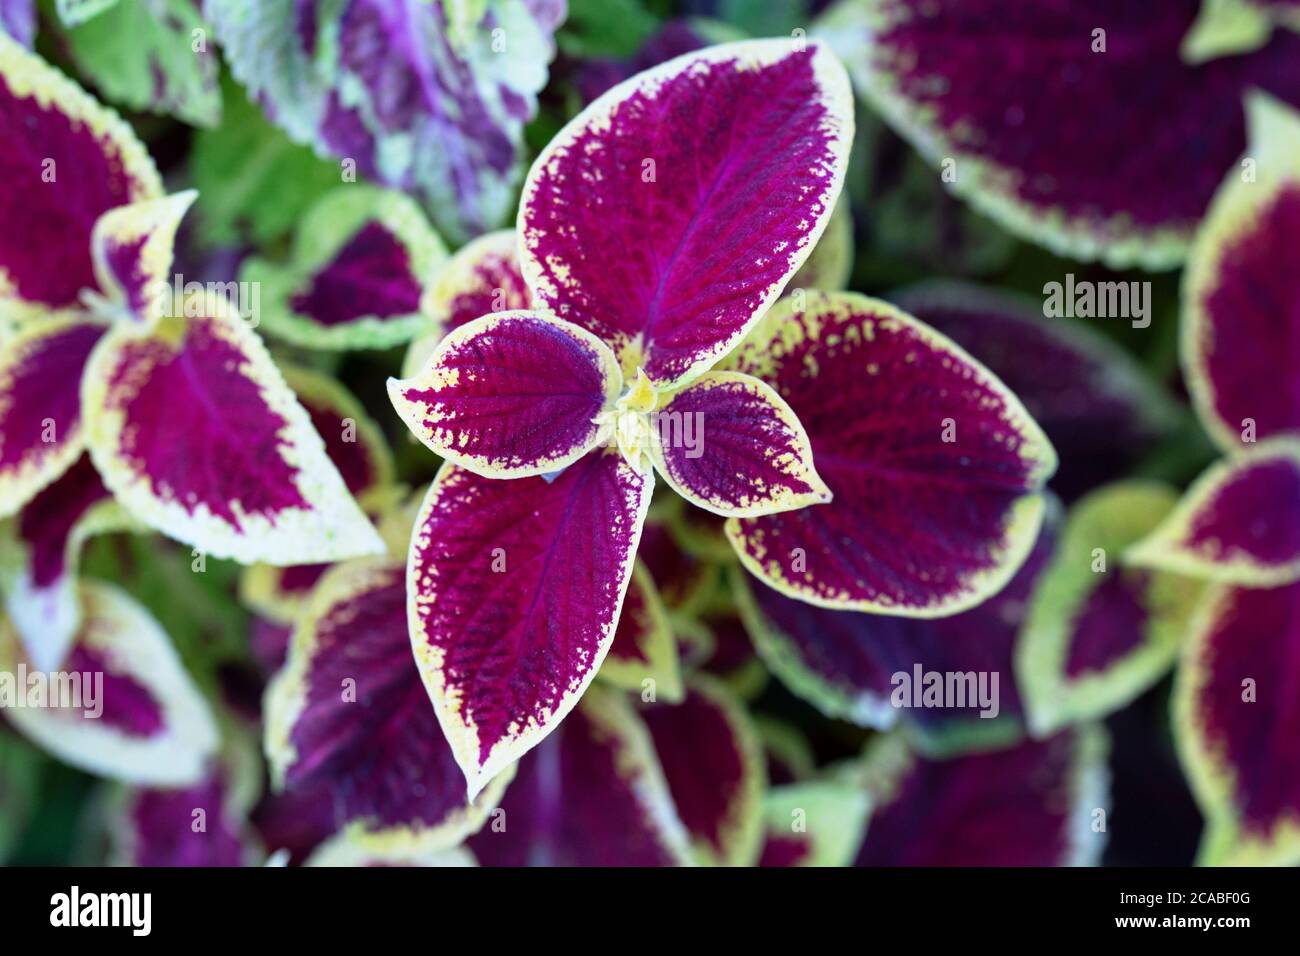 Coleus, Solenostemon scutellarioides, plant Stock Photo